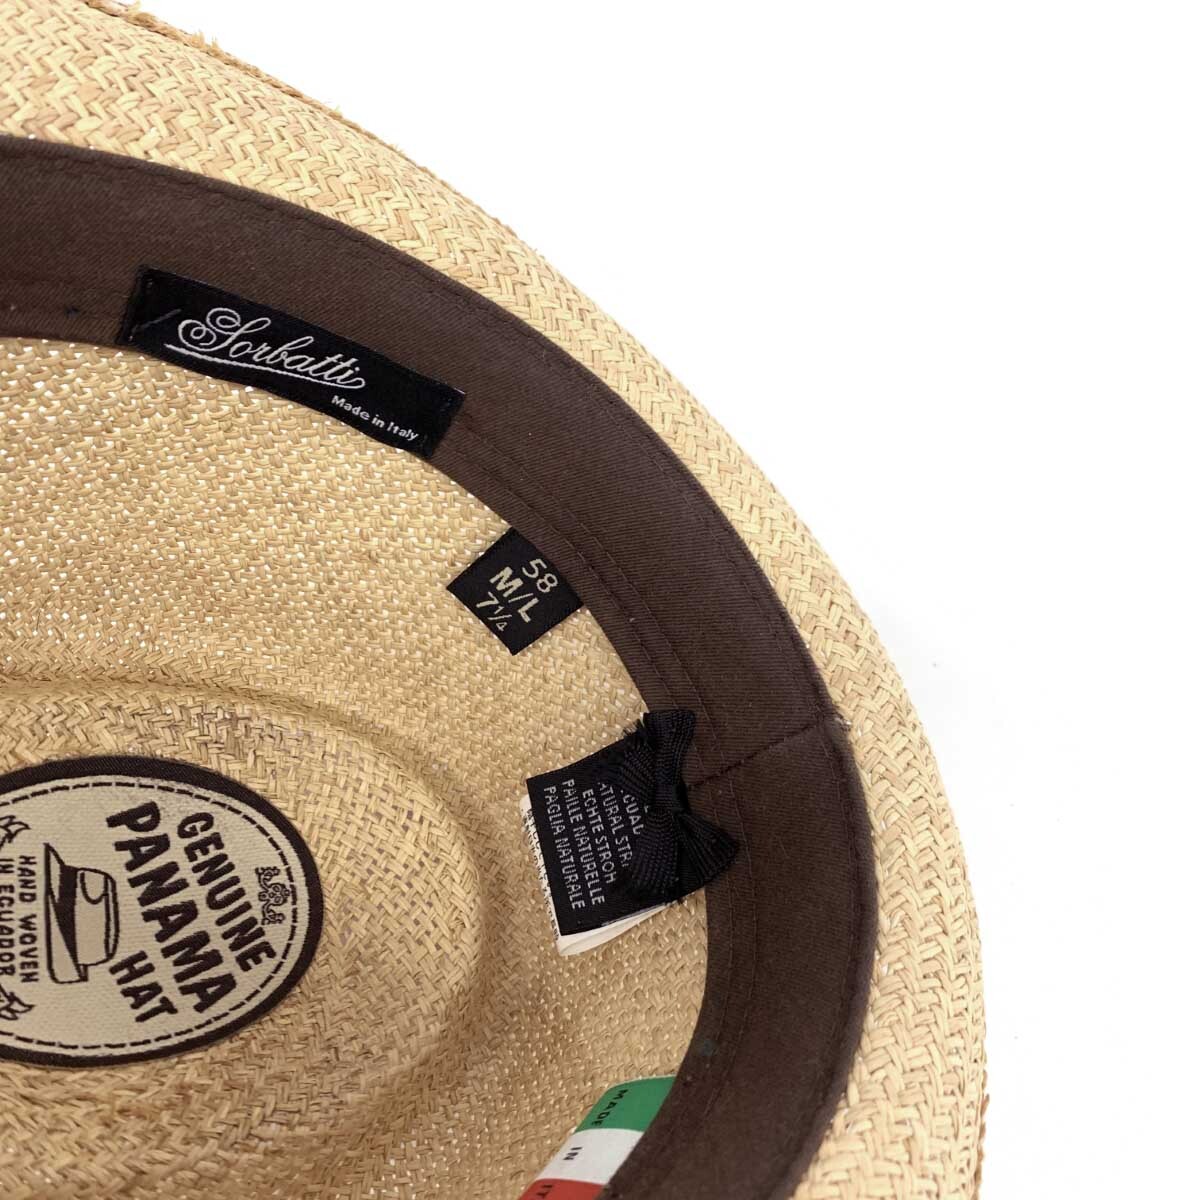 良好◆SORBATTI ソルバッティ パナマハット M/L 58◆ ベージュ メンズ イタリア製 帽子 hat 服飾小物_画像9